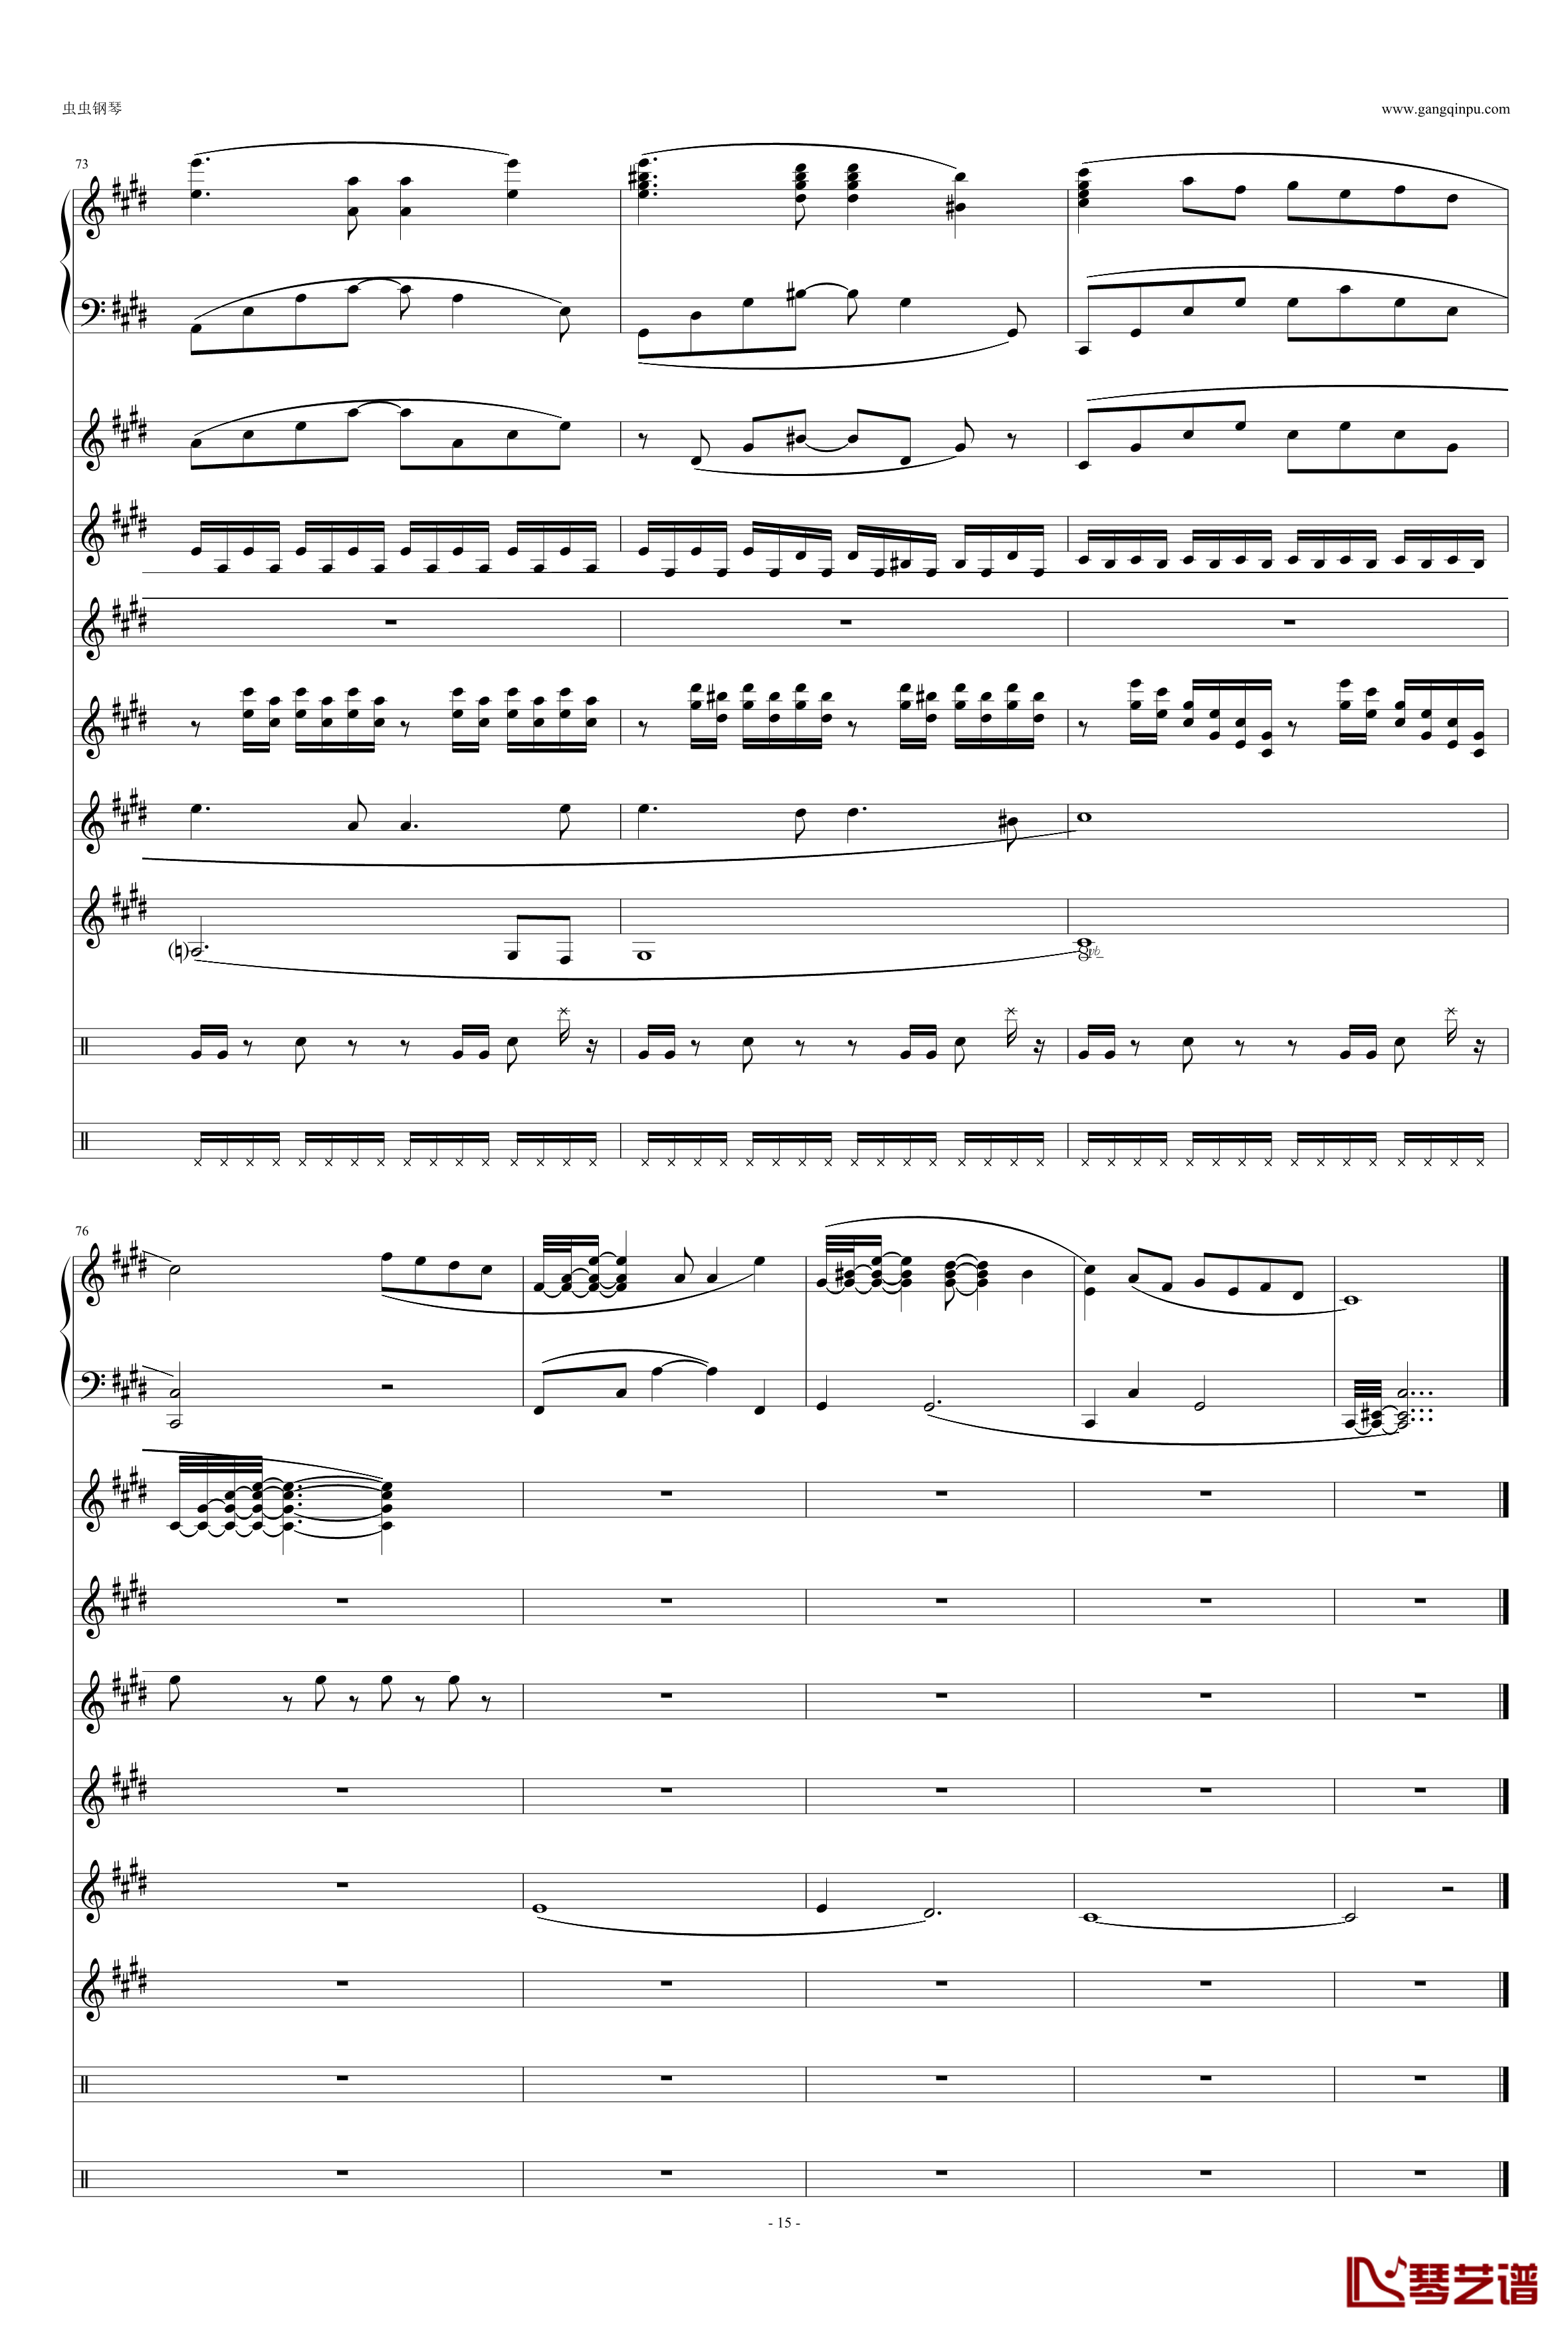 利鲁之歌钢琴谱-leeloos theme-马克西姆-Maksim·Mrvica15